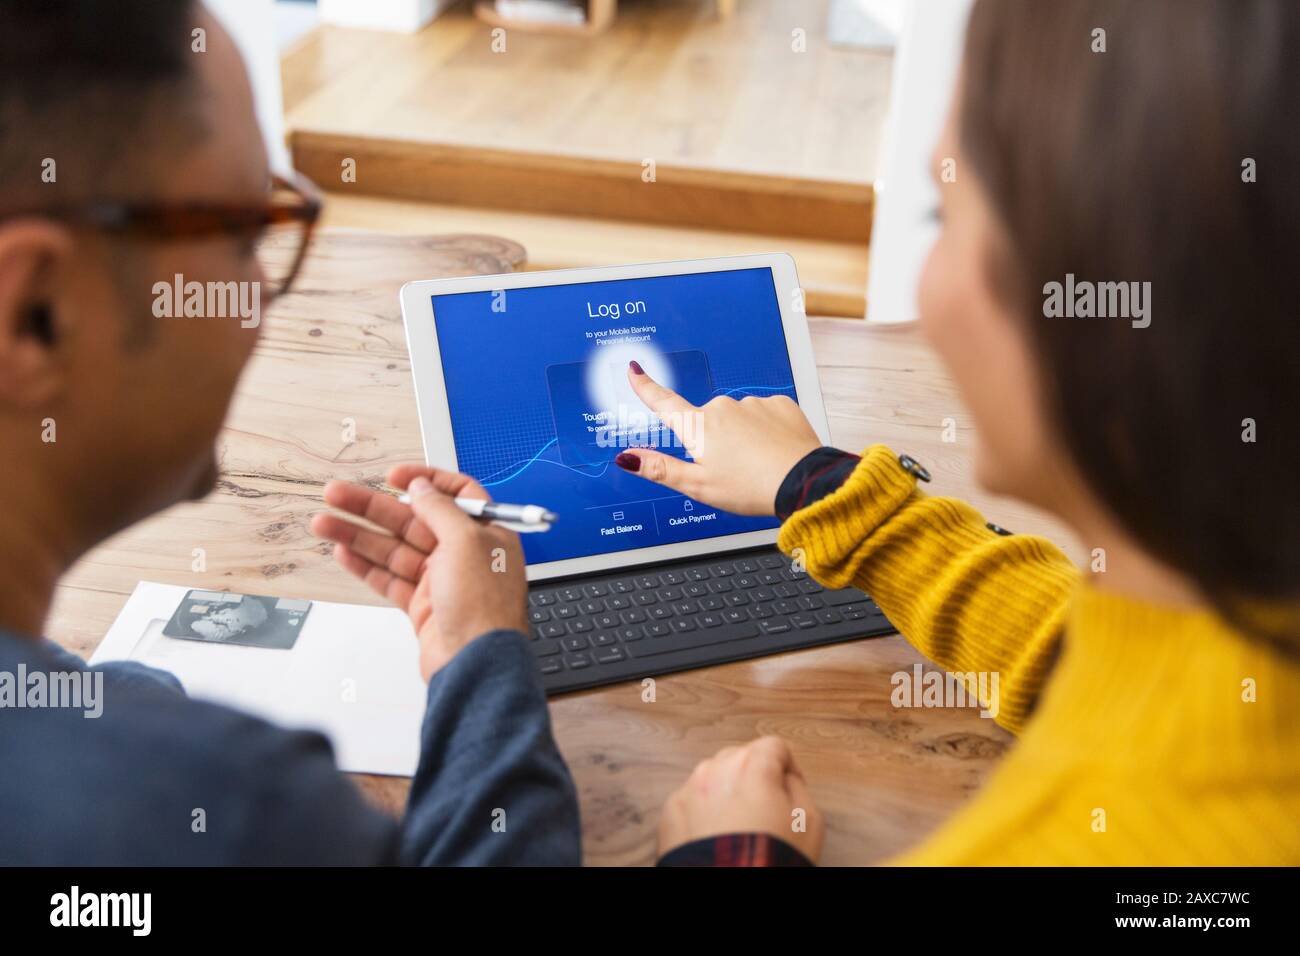 Verbinden Sie die Zahlung von Rechnungen online, indem Sie sich mit dem Fingerabdruck auf dem digitalen Tablet anmelden Stockfoto